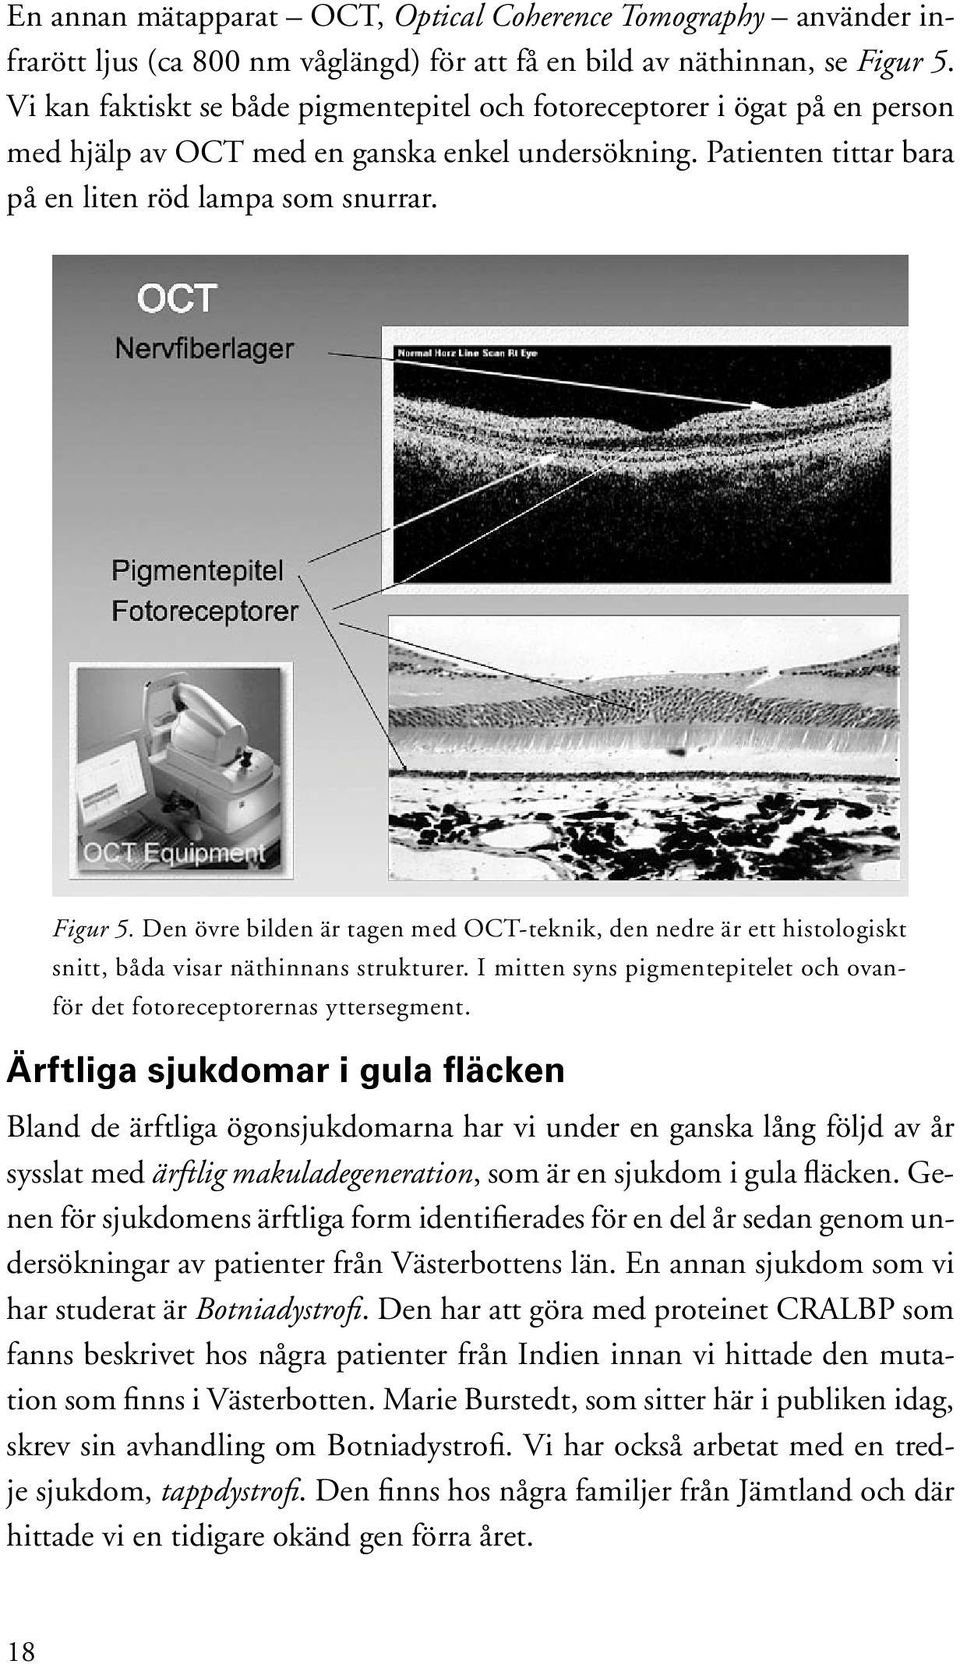 Den övre bilden är tagen med OCT-teknik, den nedre är ett histologiskt snitt, båda visar näthinnans strukturer. I mitten syns pigmentepitelet och ovanför det fotoreceptorernas yttersegment.